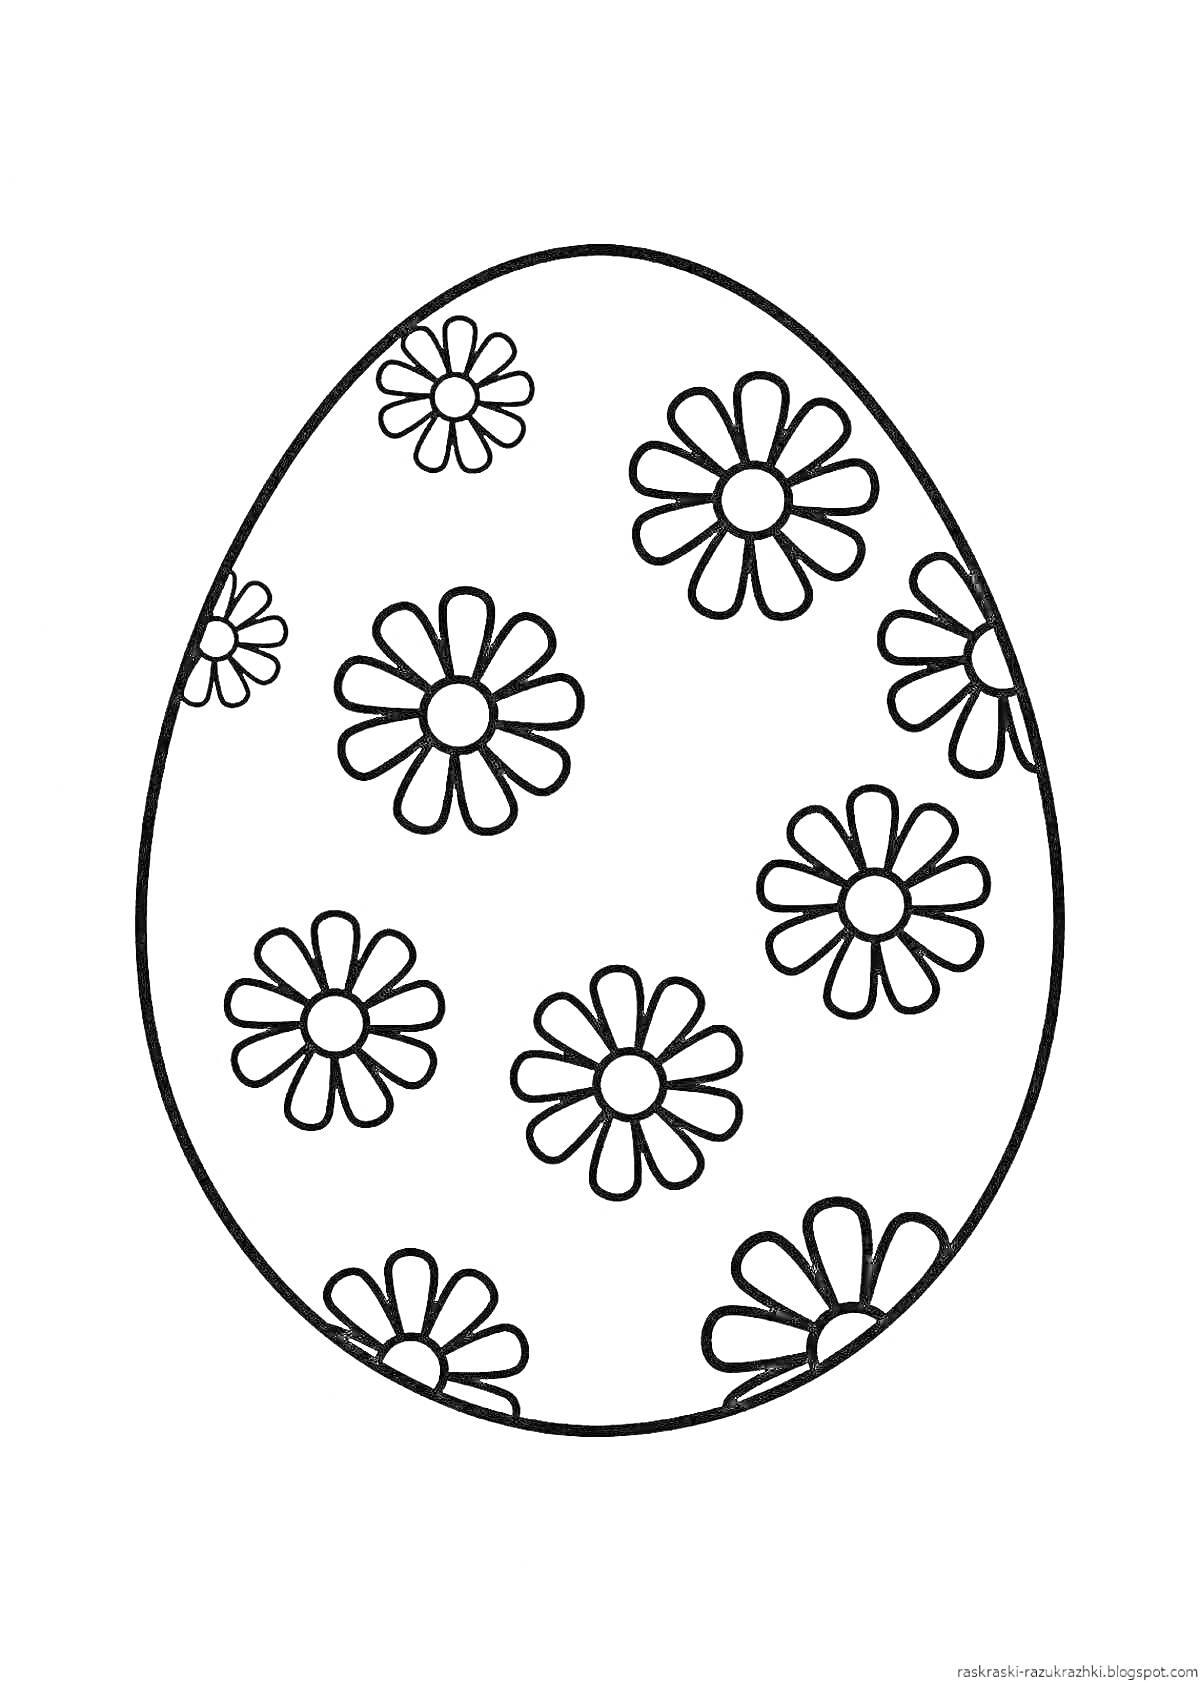 Раскраска яичко с цветами